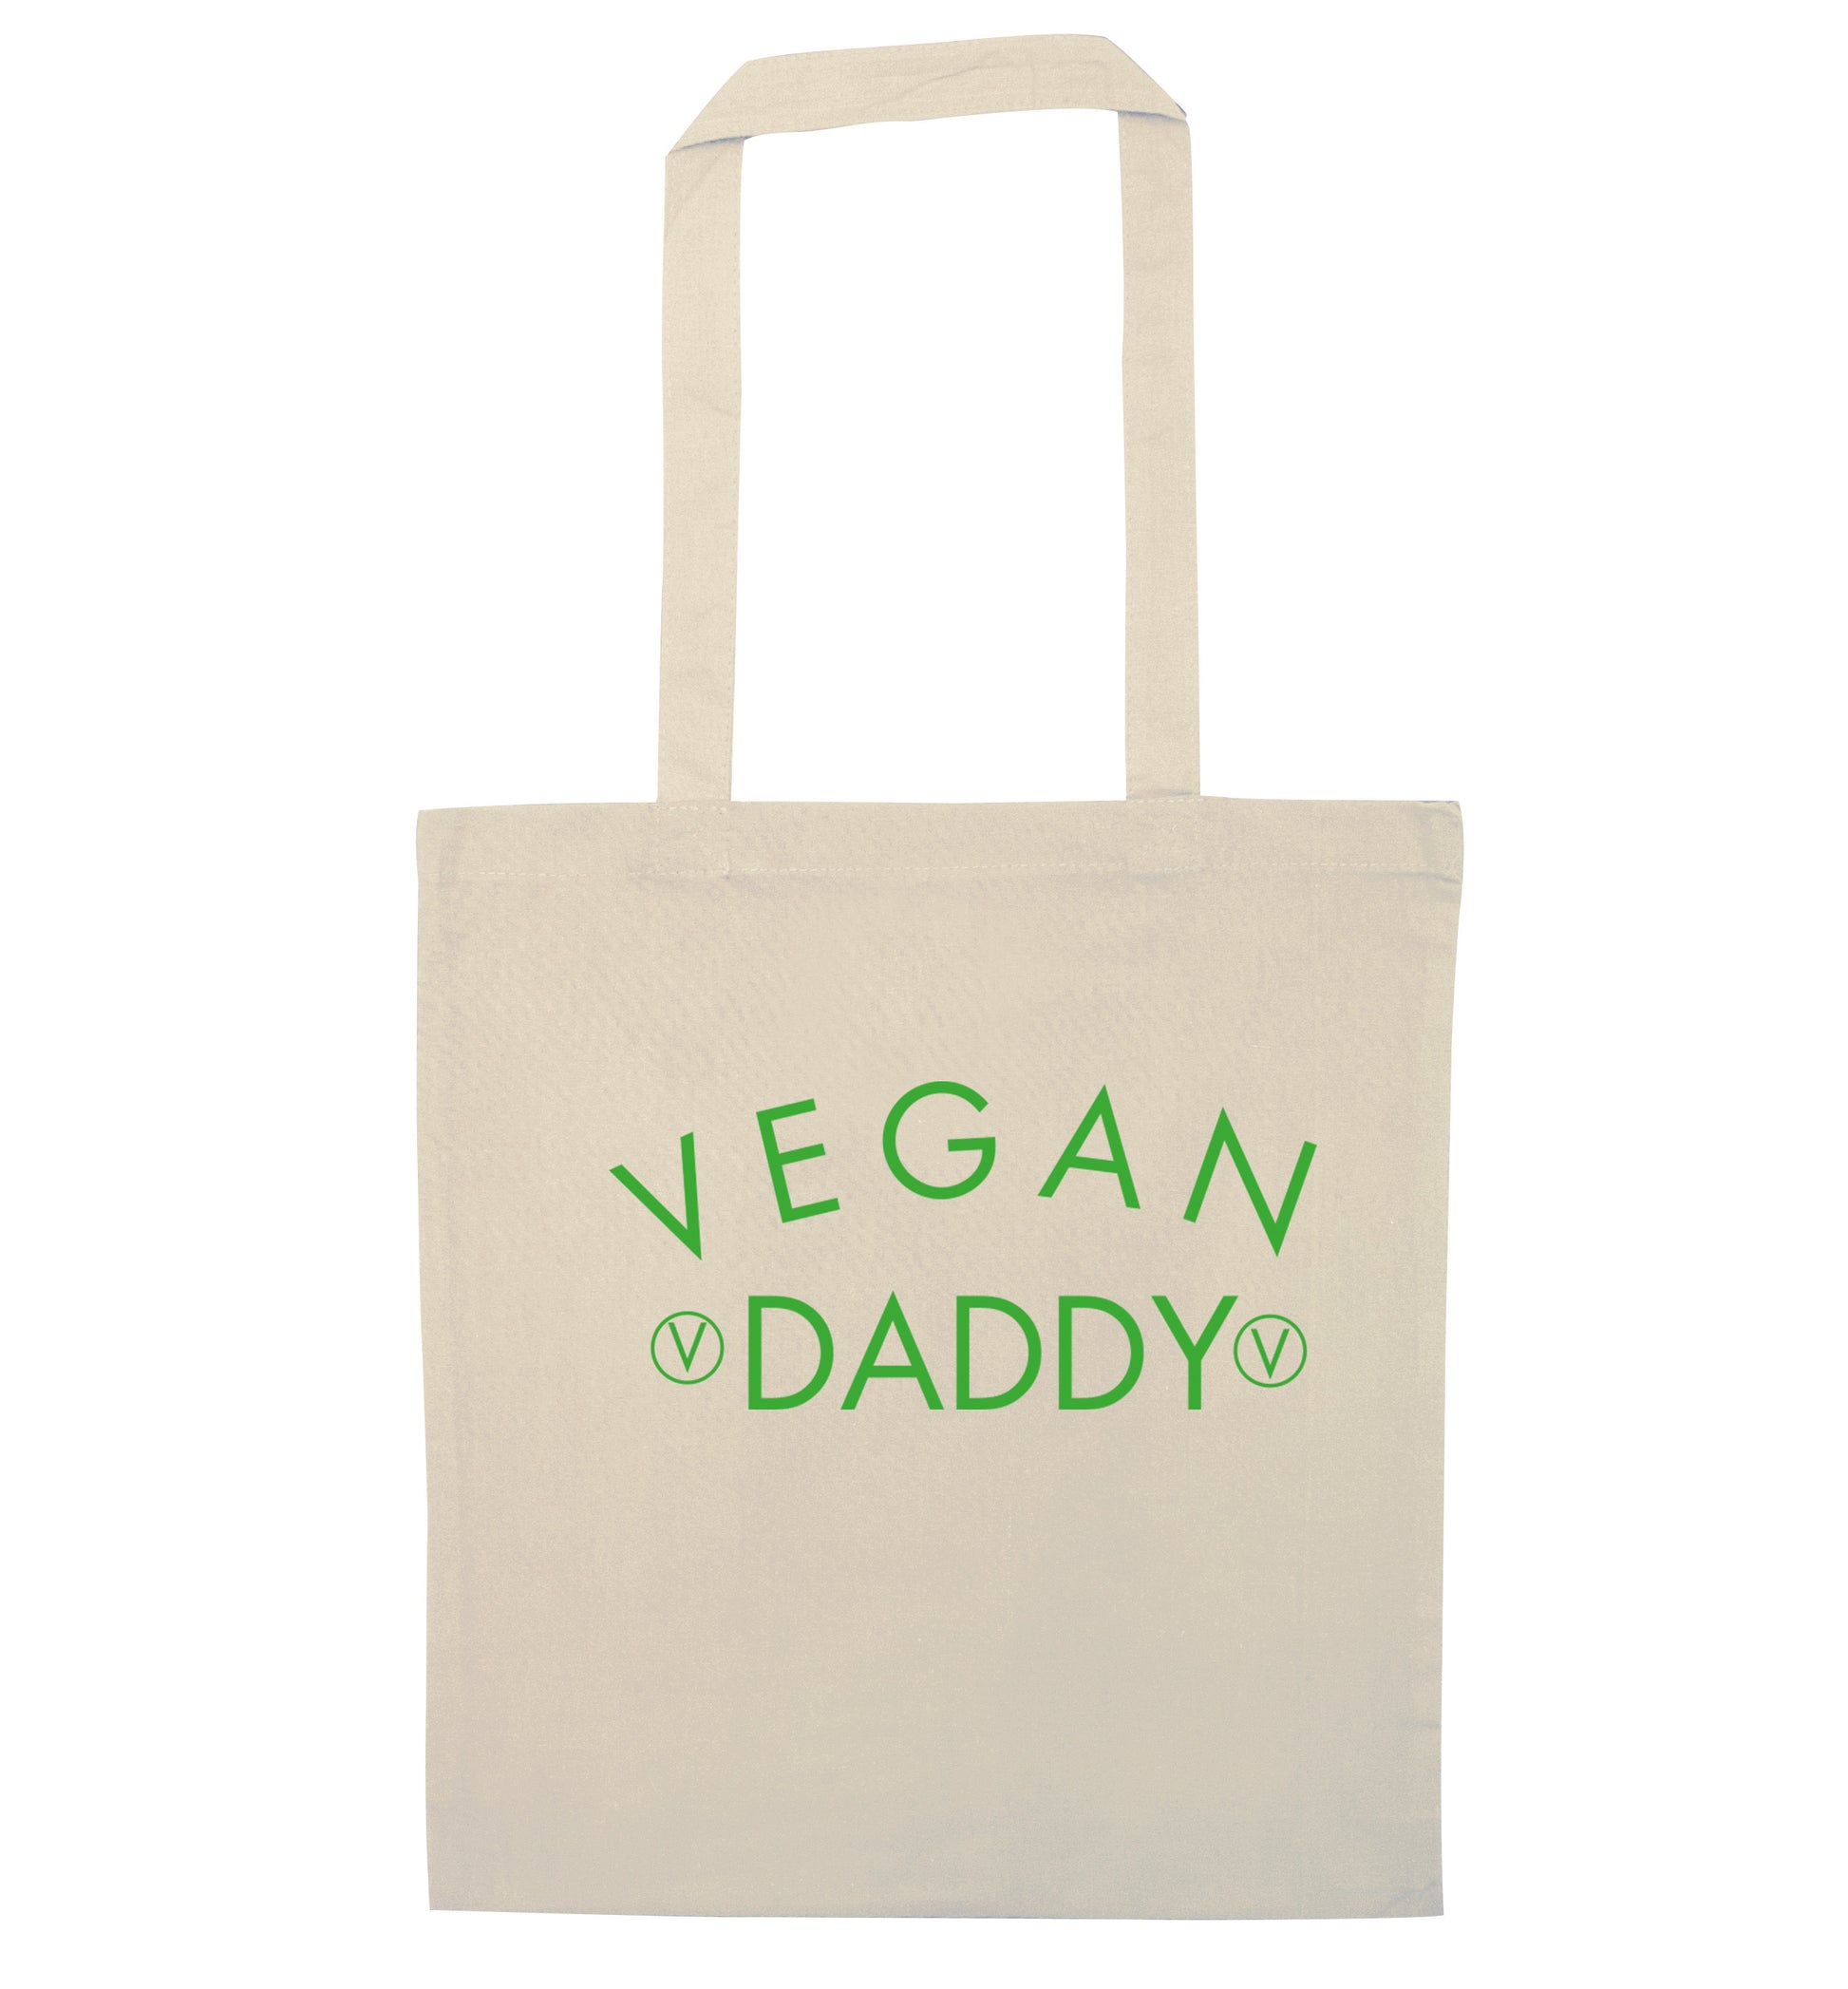 Vegan daddy natural tote bag